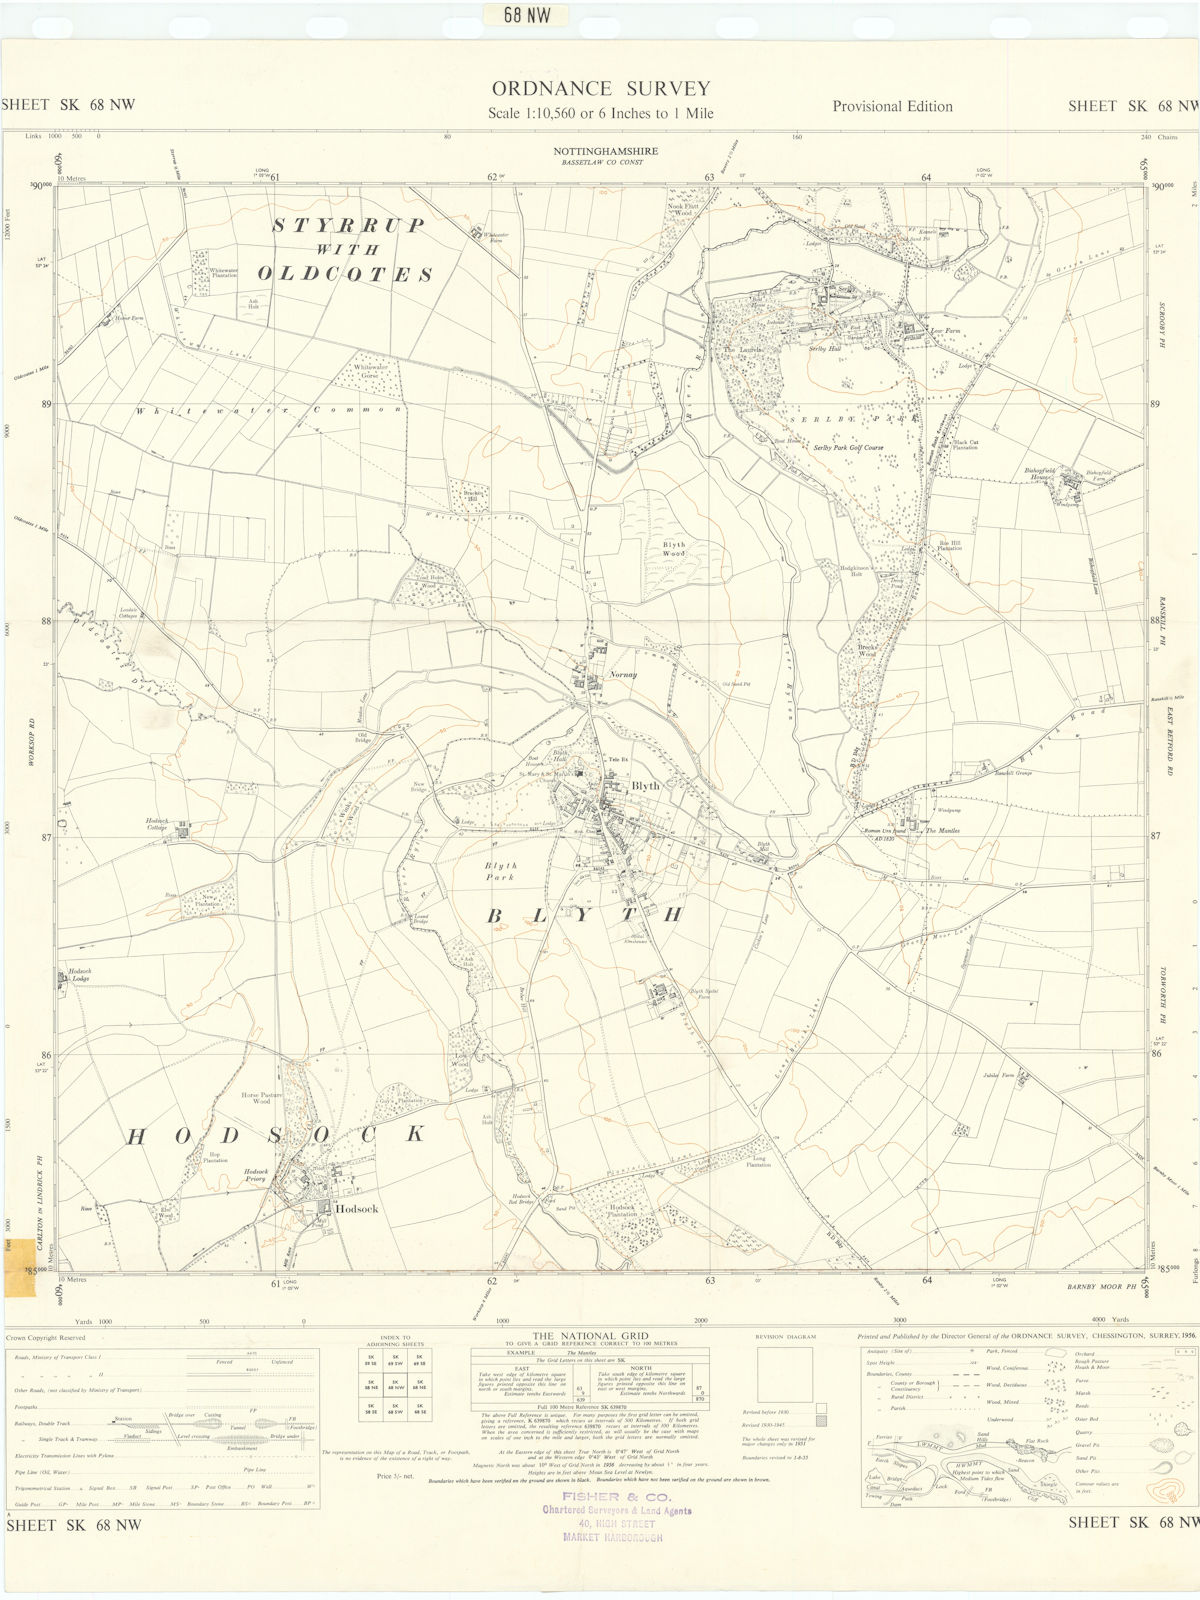 Ordnance Survey Sheet SK68NW Nottinghamshire Blyth Hodsock 1956 old map